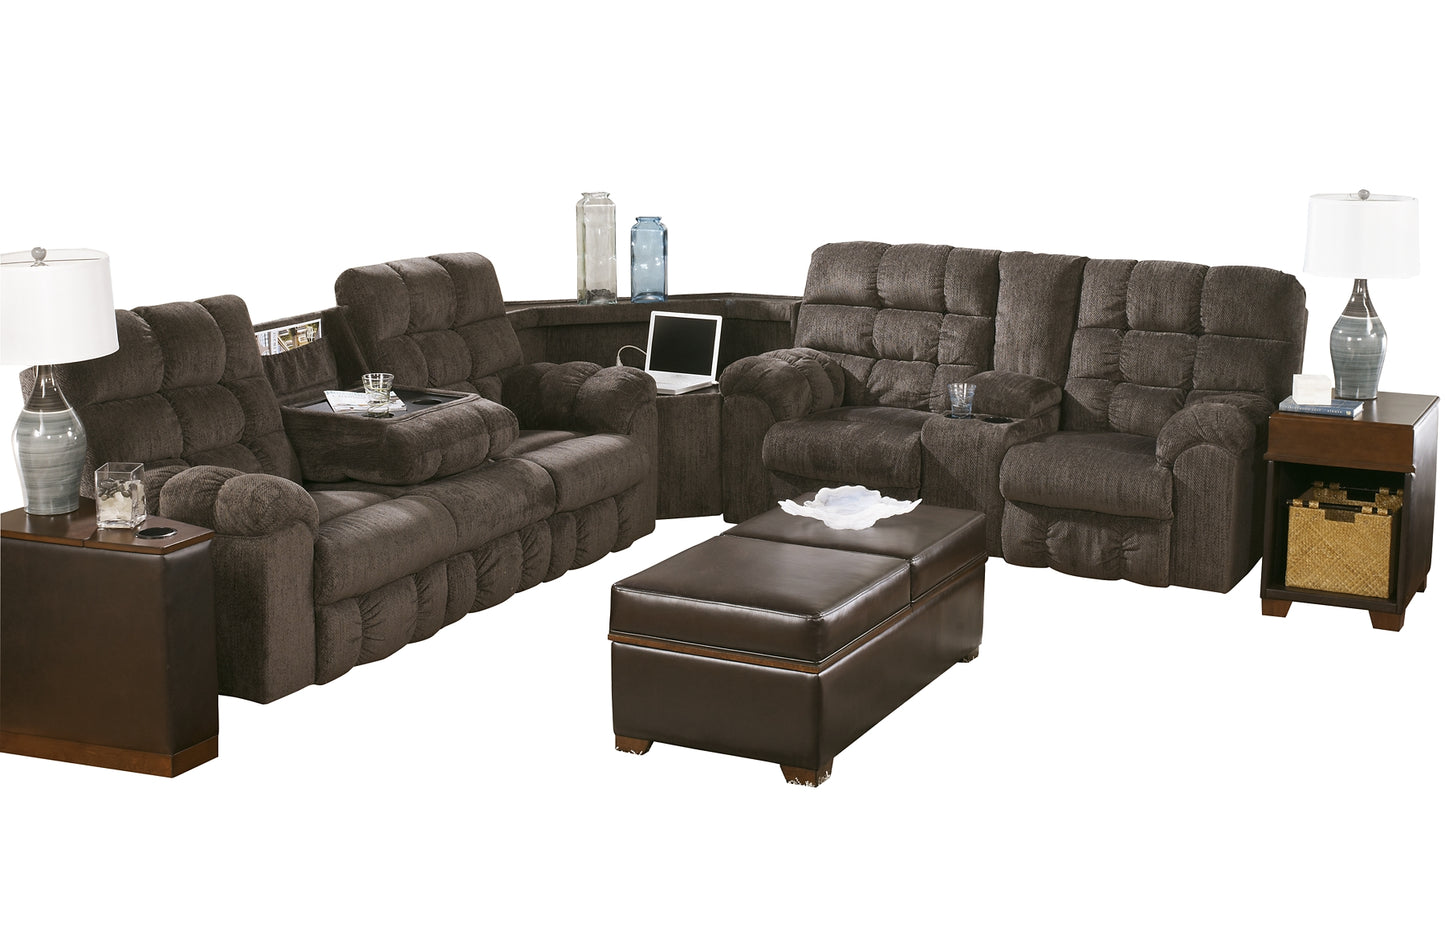 Acieona 3-Piece Reclining Sectional JB's Furniture  Home Furniture, Home Decor, Furniture Store